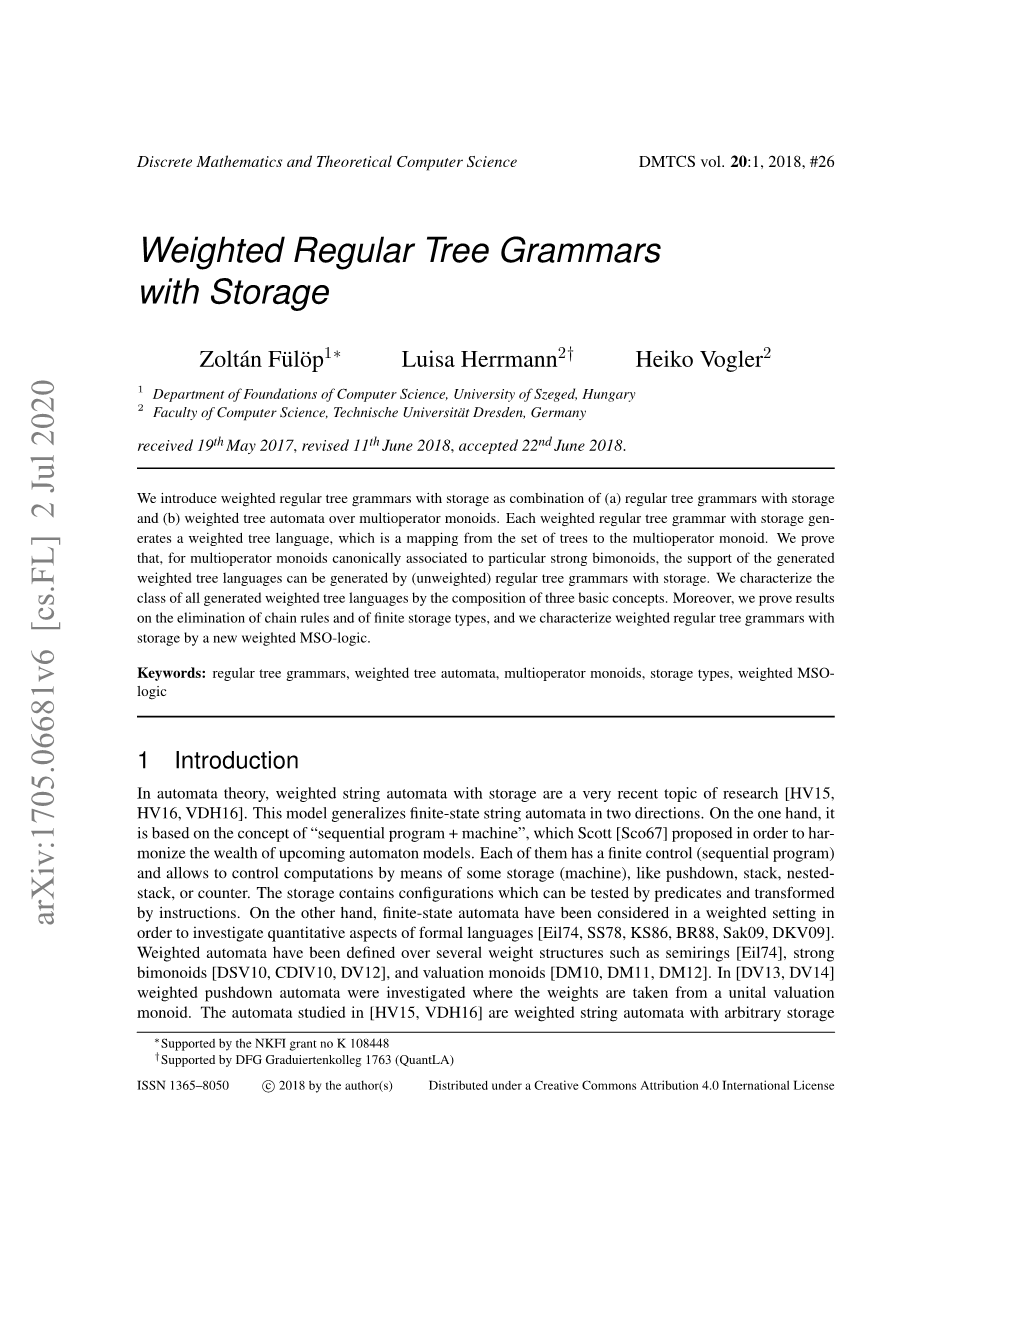 Weighted Regular Tree Grammars with Storage